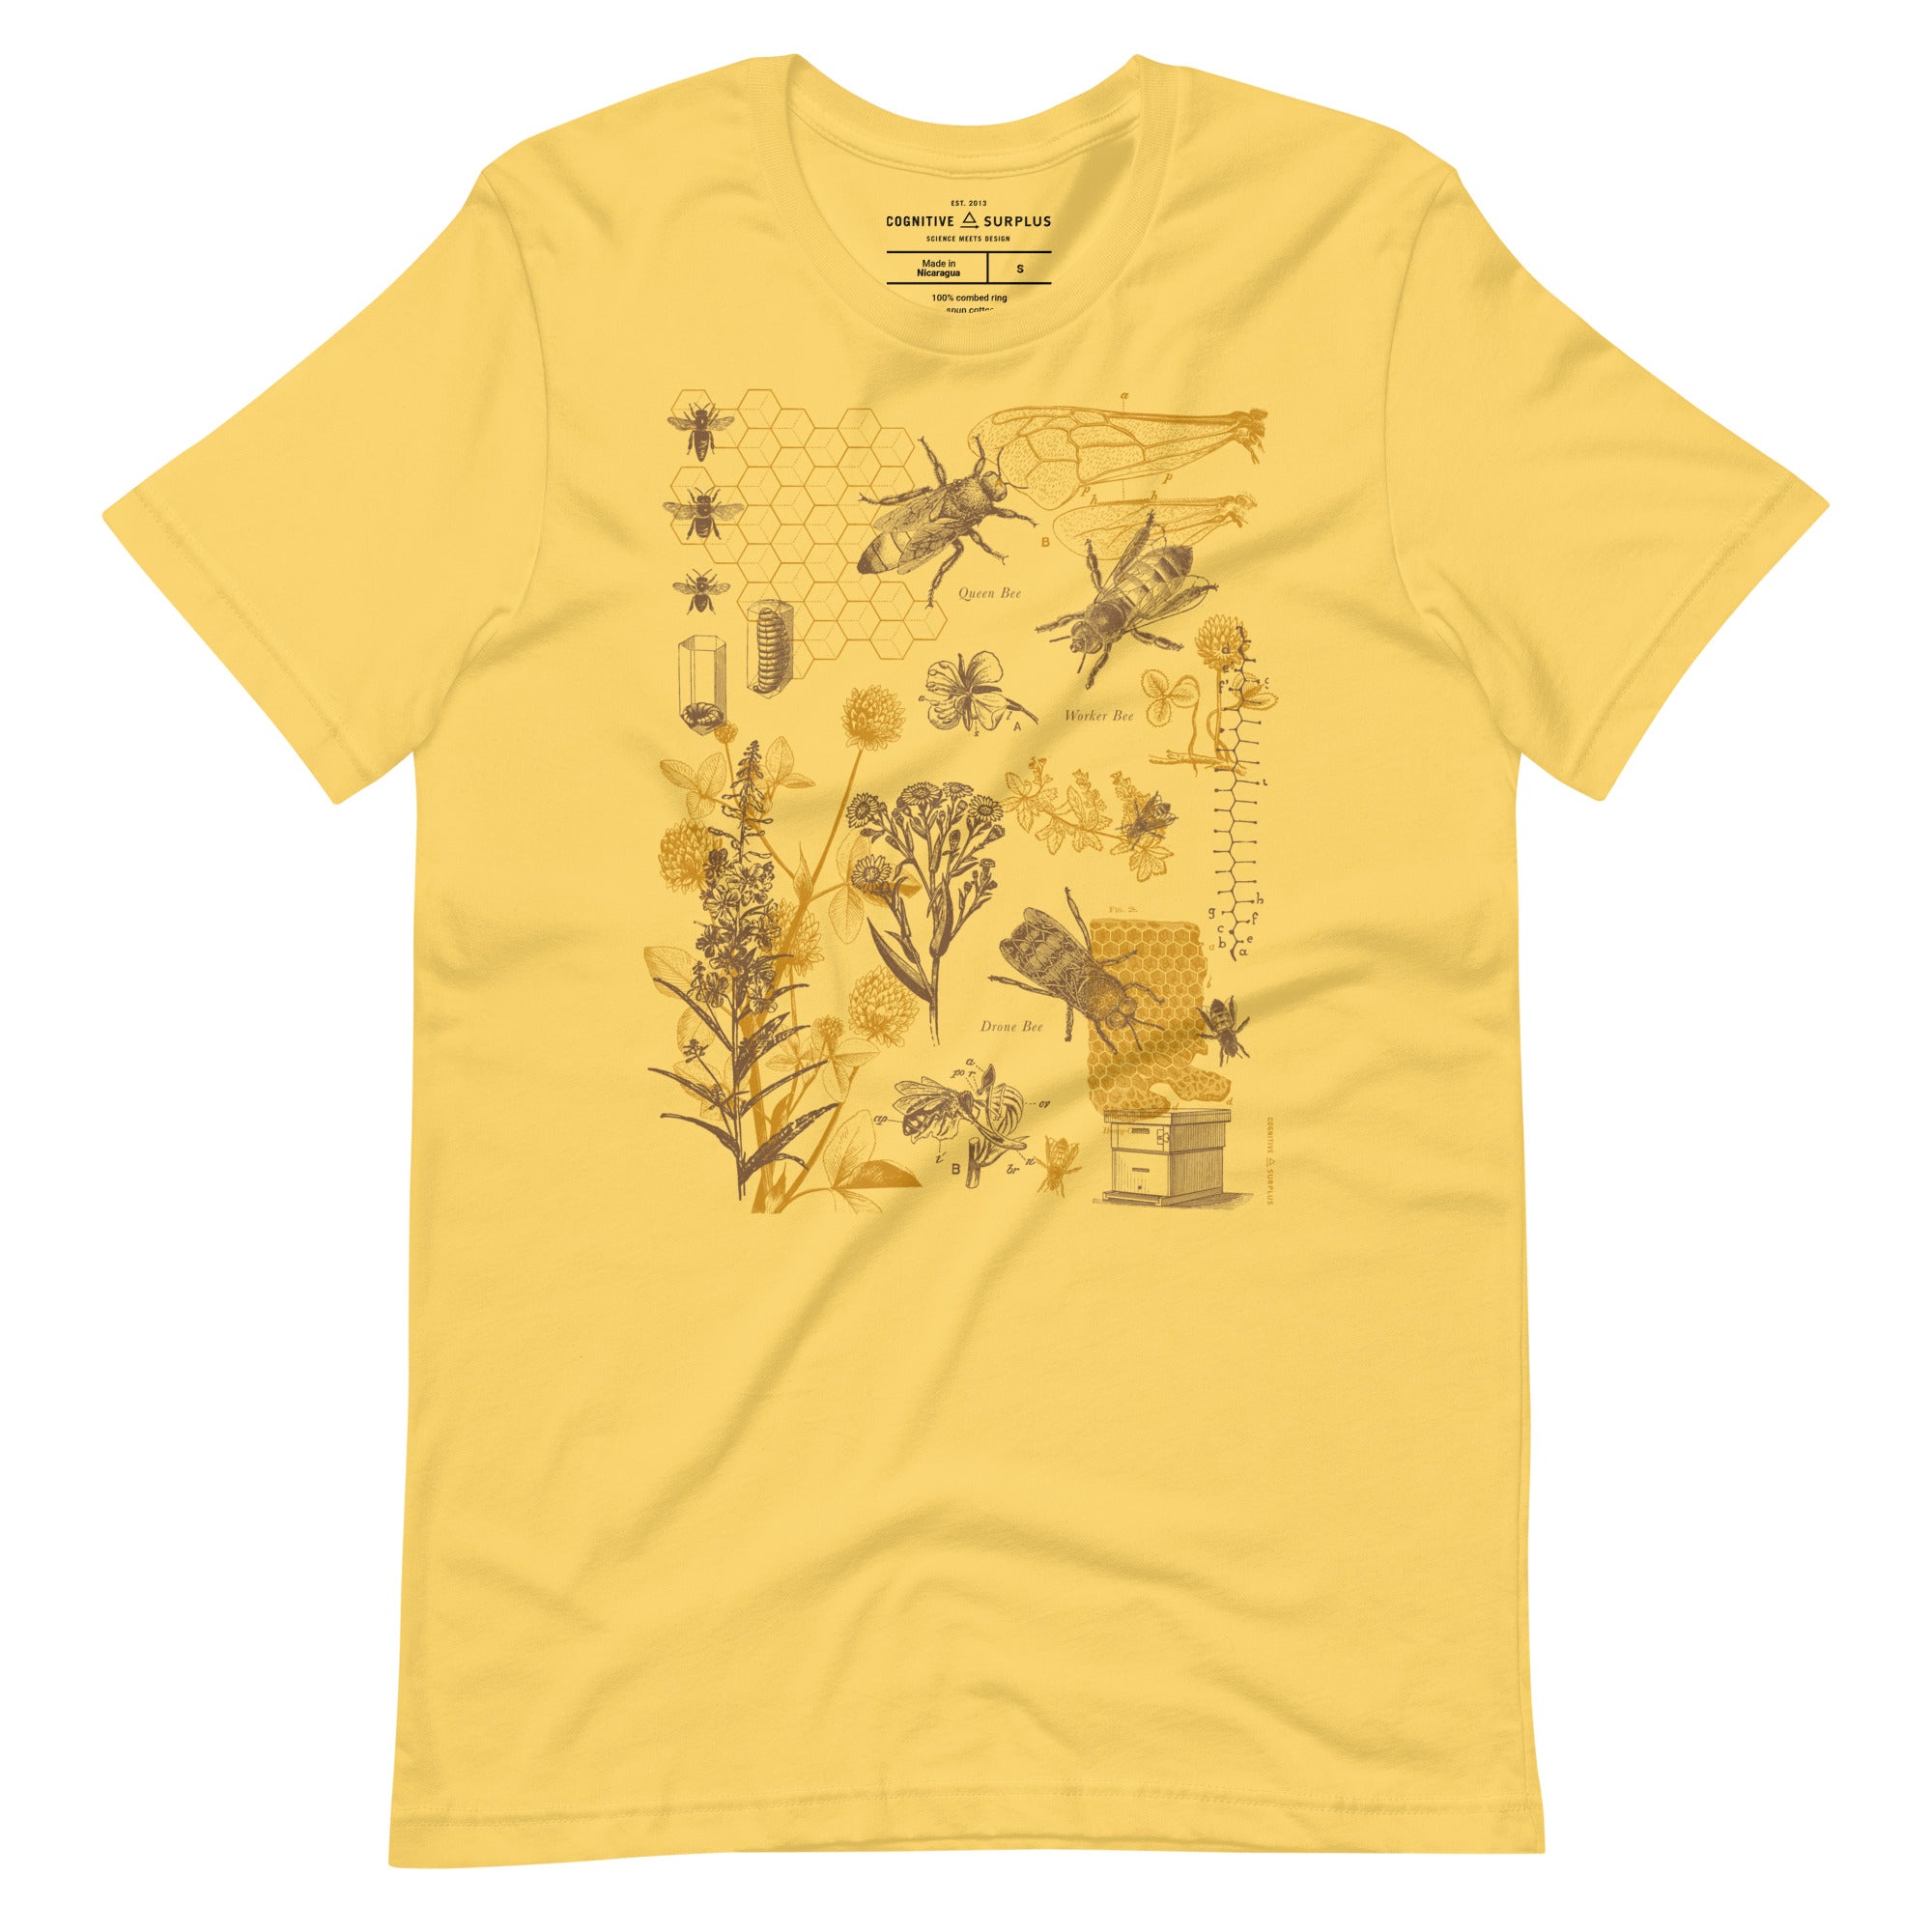 unisex-staple-t-shirt-yellow-front-654a6a38e9e7b.jpg